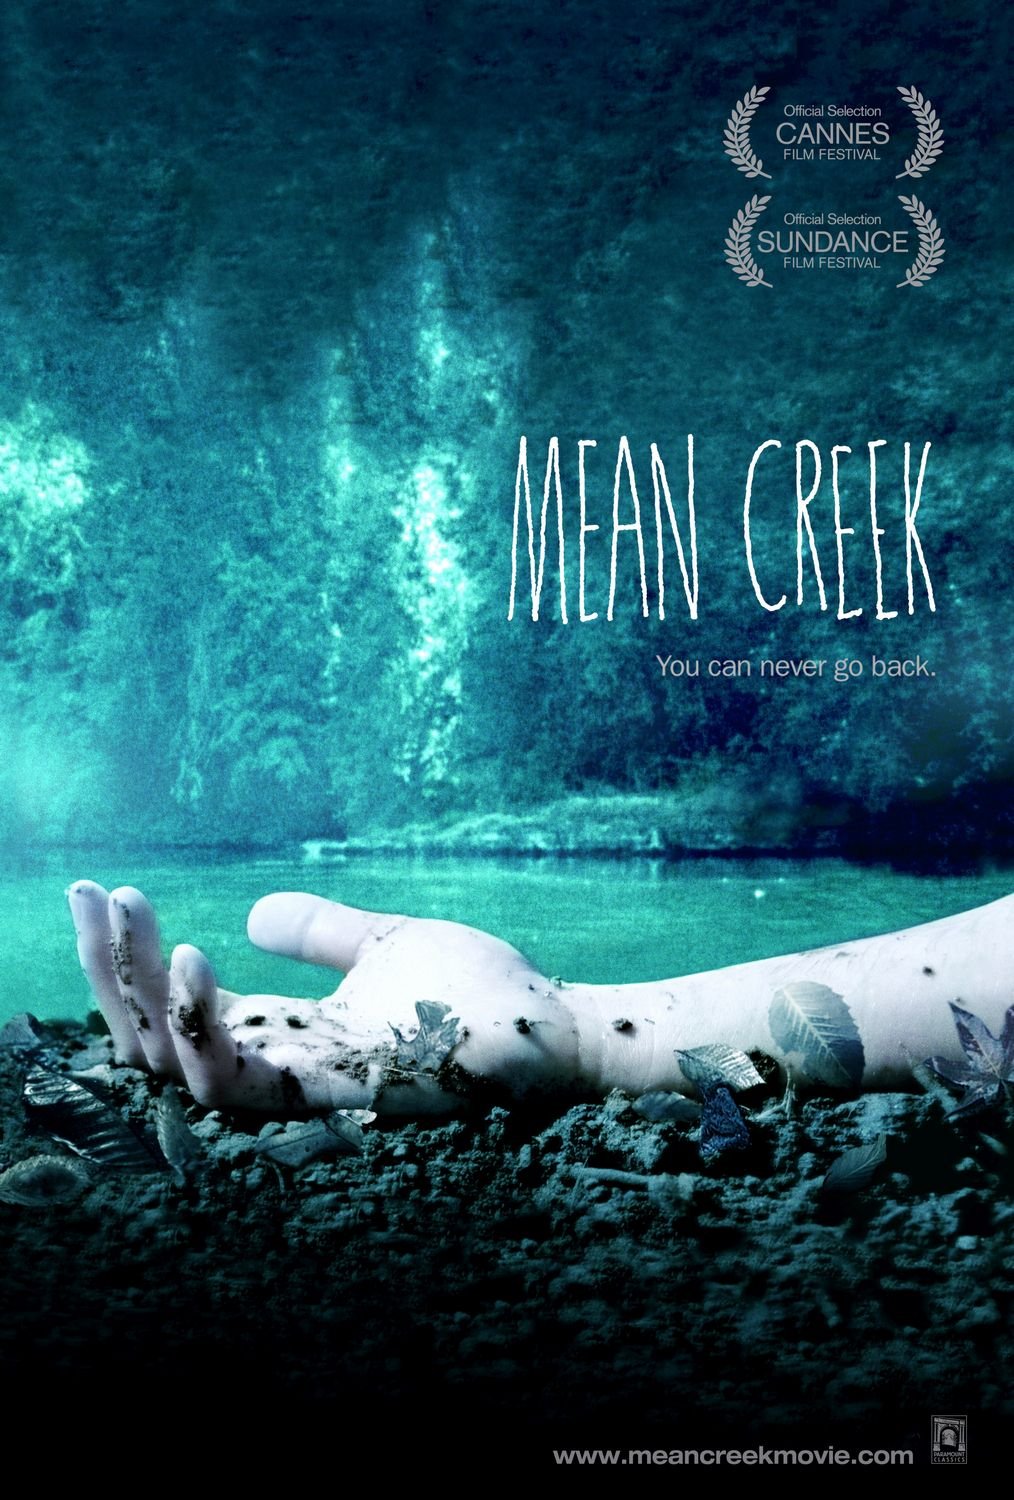 L'affiche du film Mean Creek